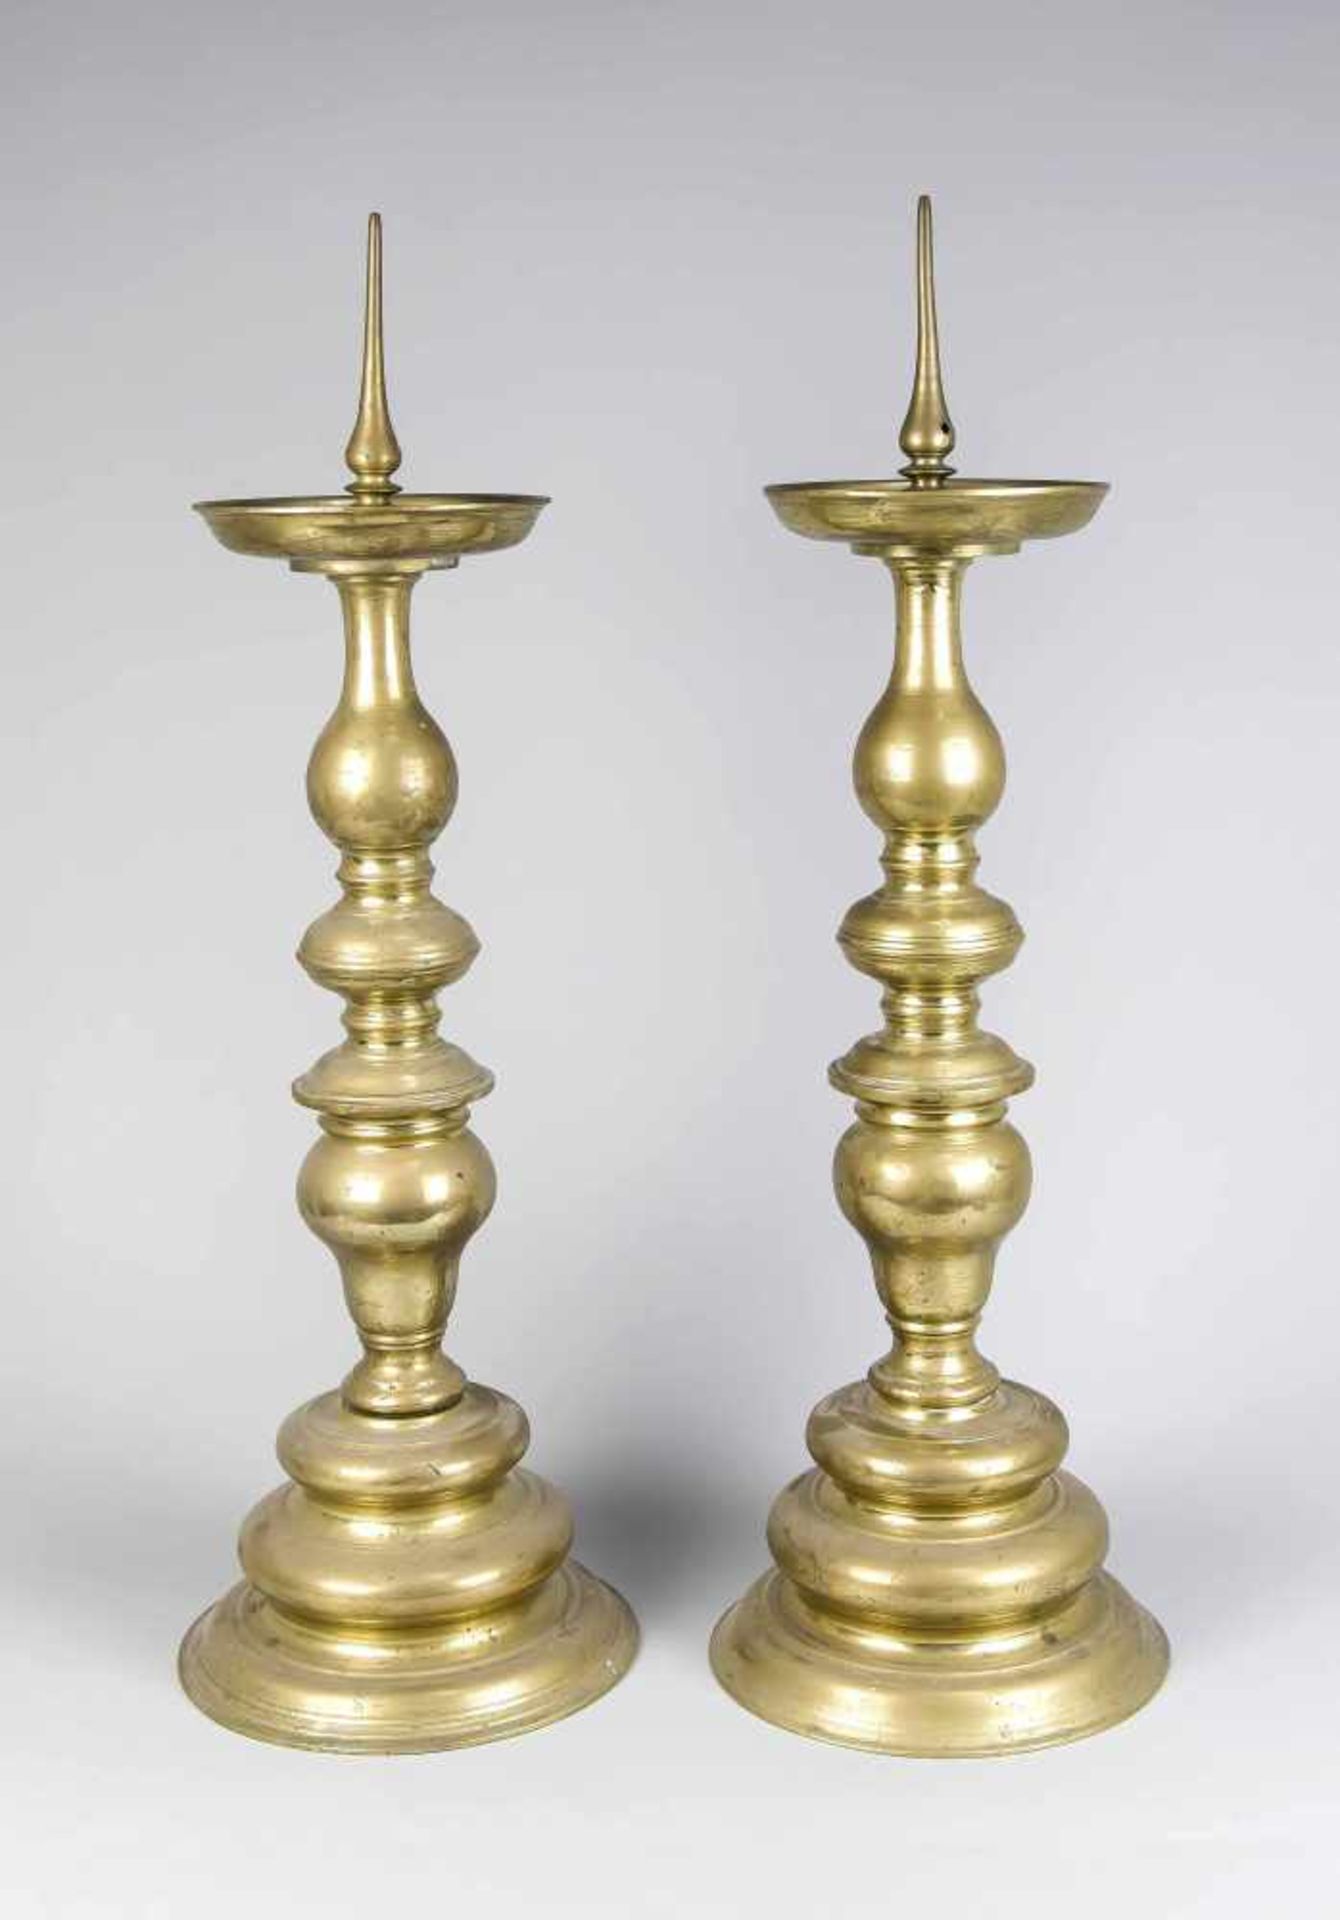 Paar große Barock-Leuchter. 18. Jh. Bronze. H. 56 cm (ohne Dorn), Ges.-H. 71 cm- - -22.69 % buyer'